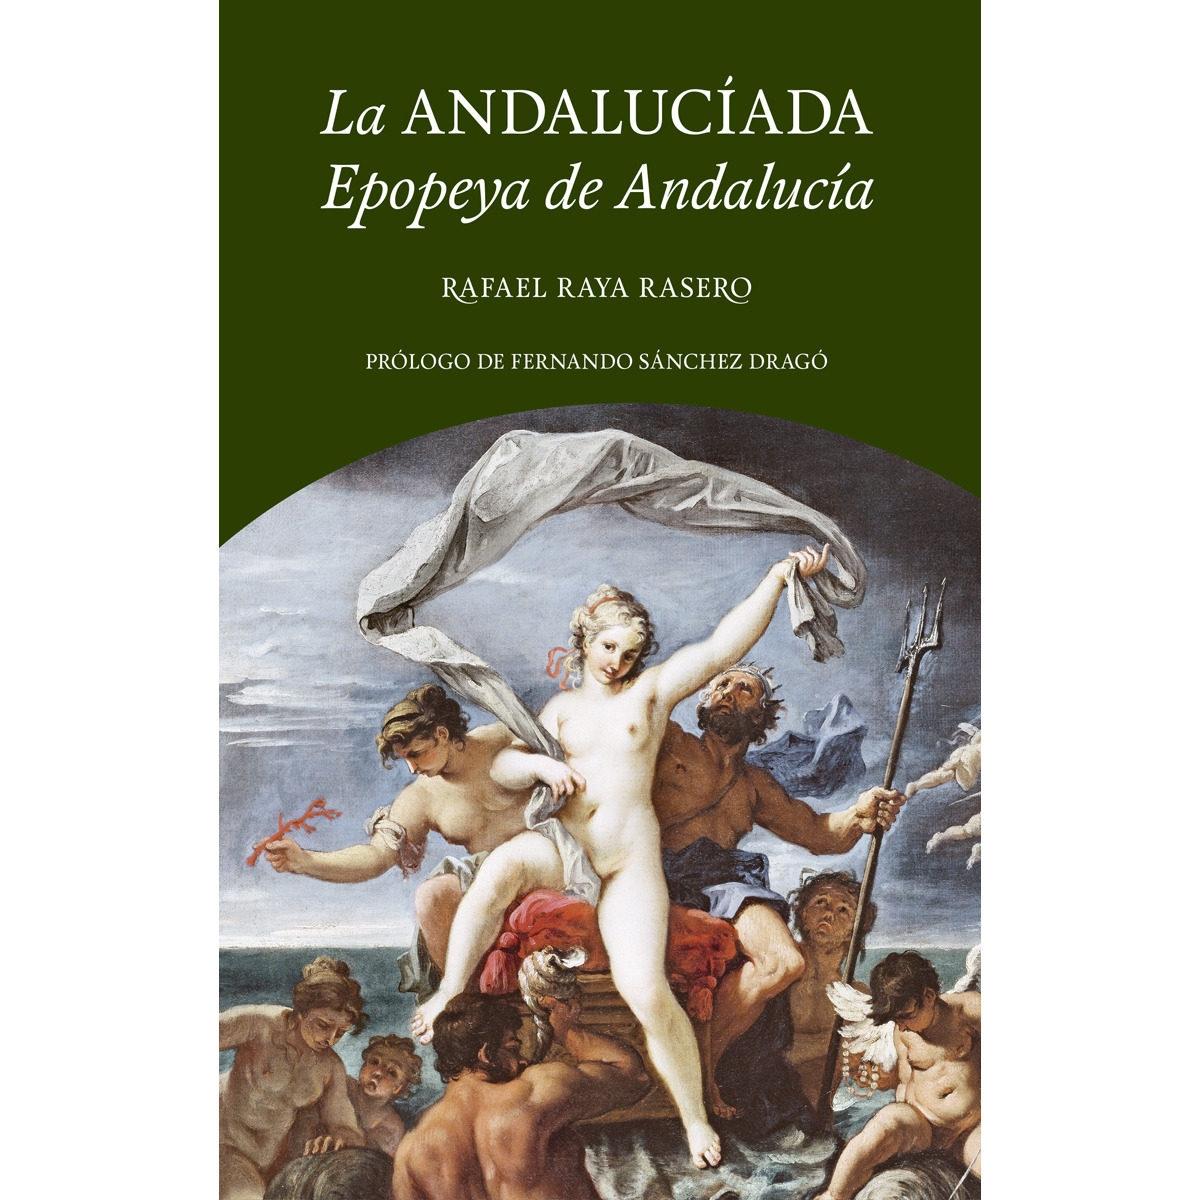 La Andalucíada "Epopeya de Andalucía"